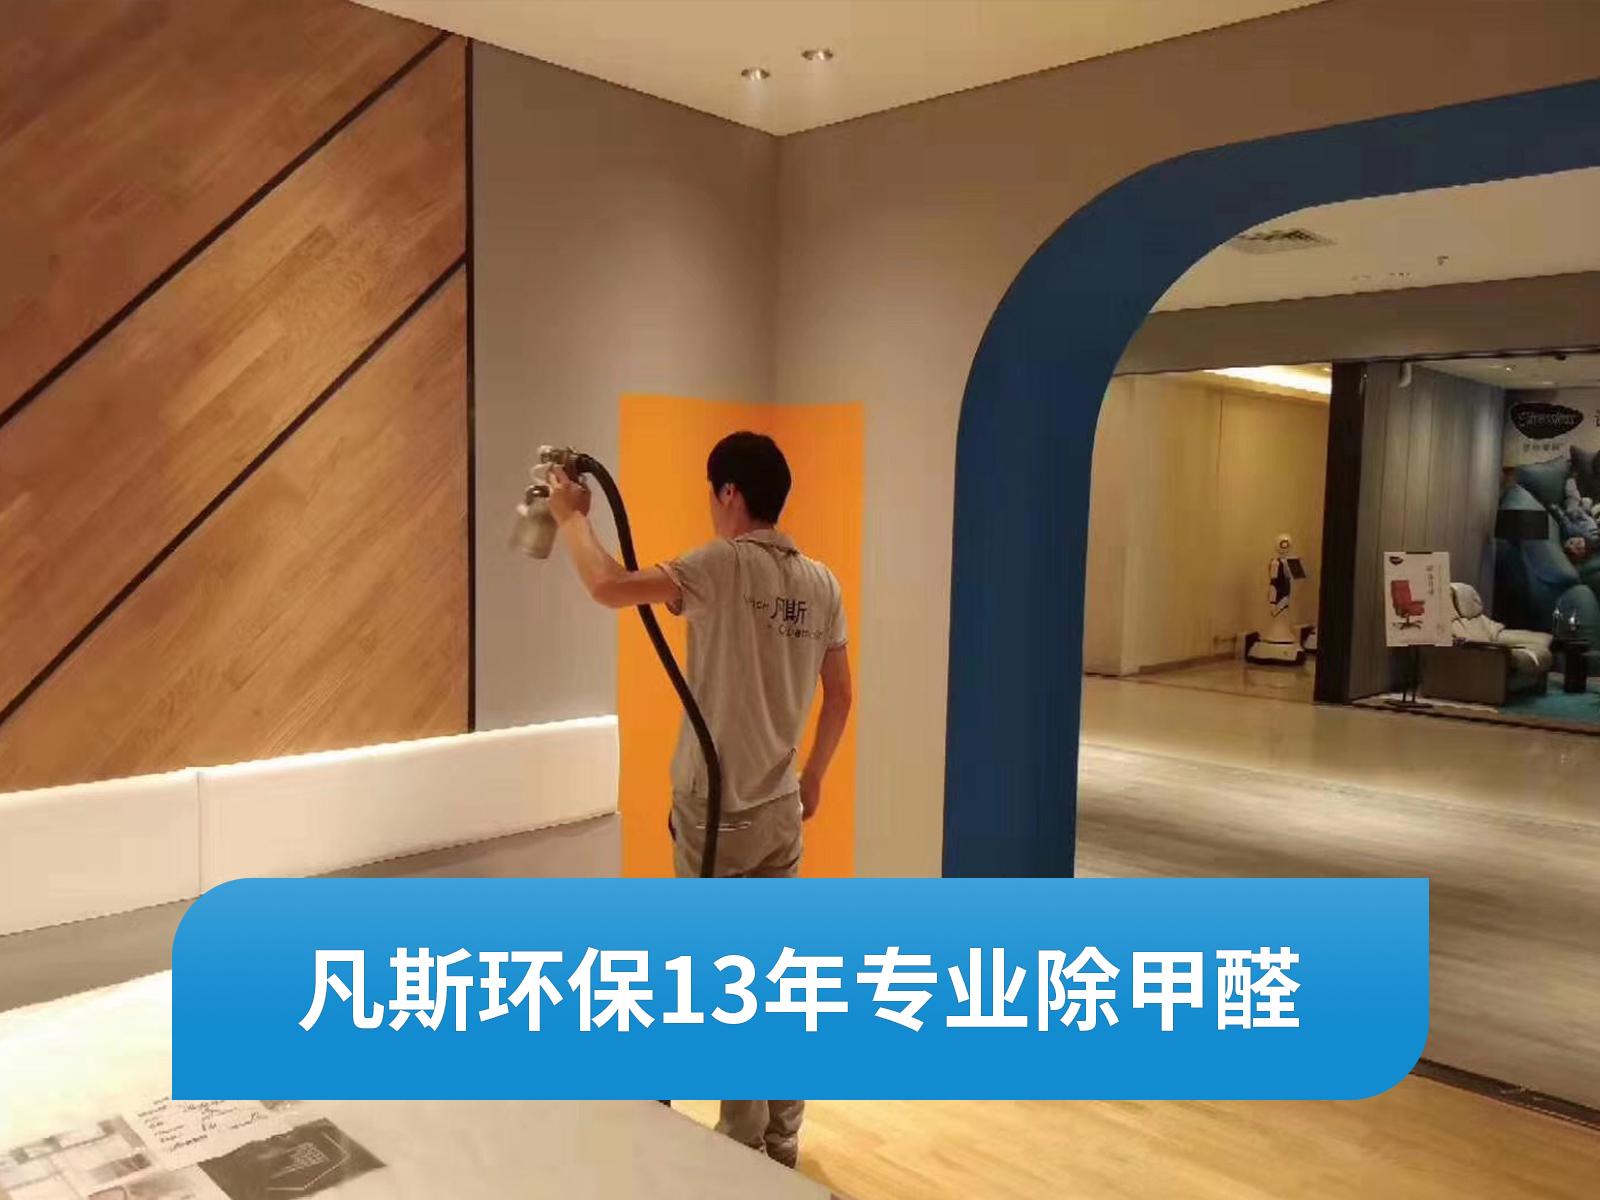 【上海凡斯环保资讯】装修喜欢贴墙纸？你可要注意壁纸中潜在的甲醛污染了